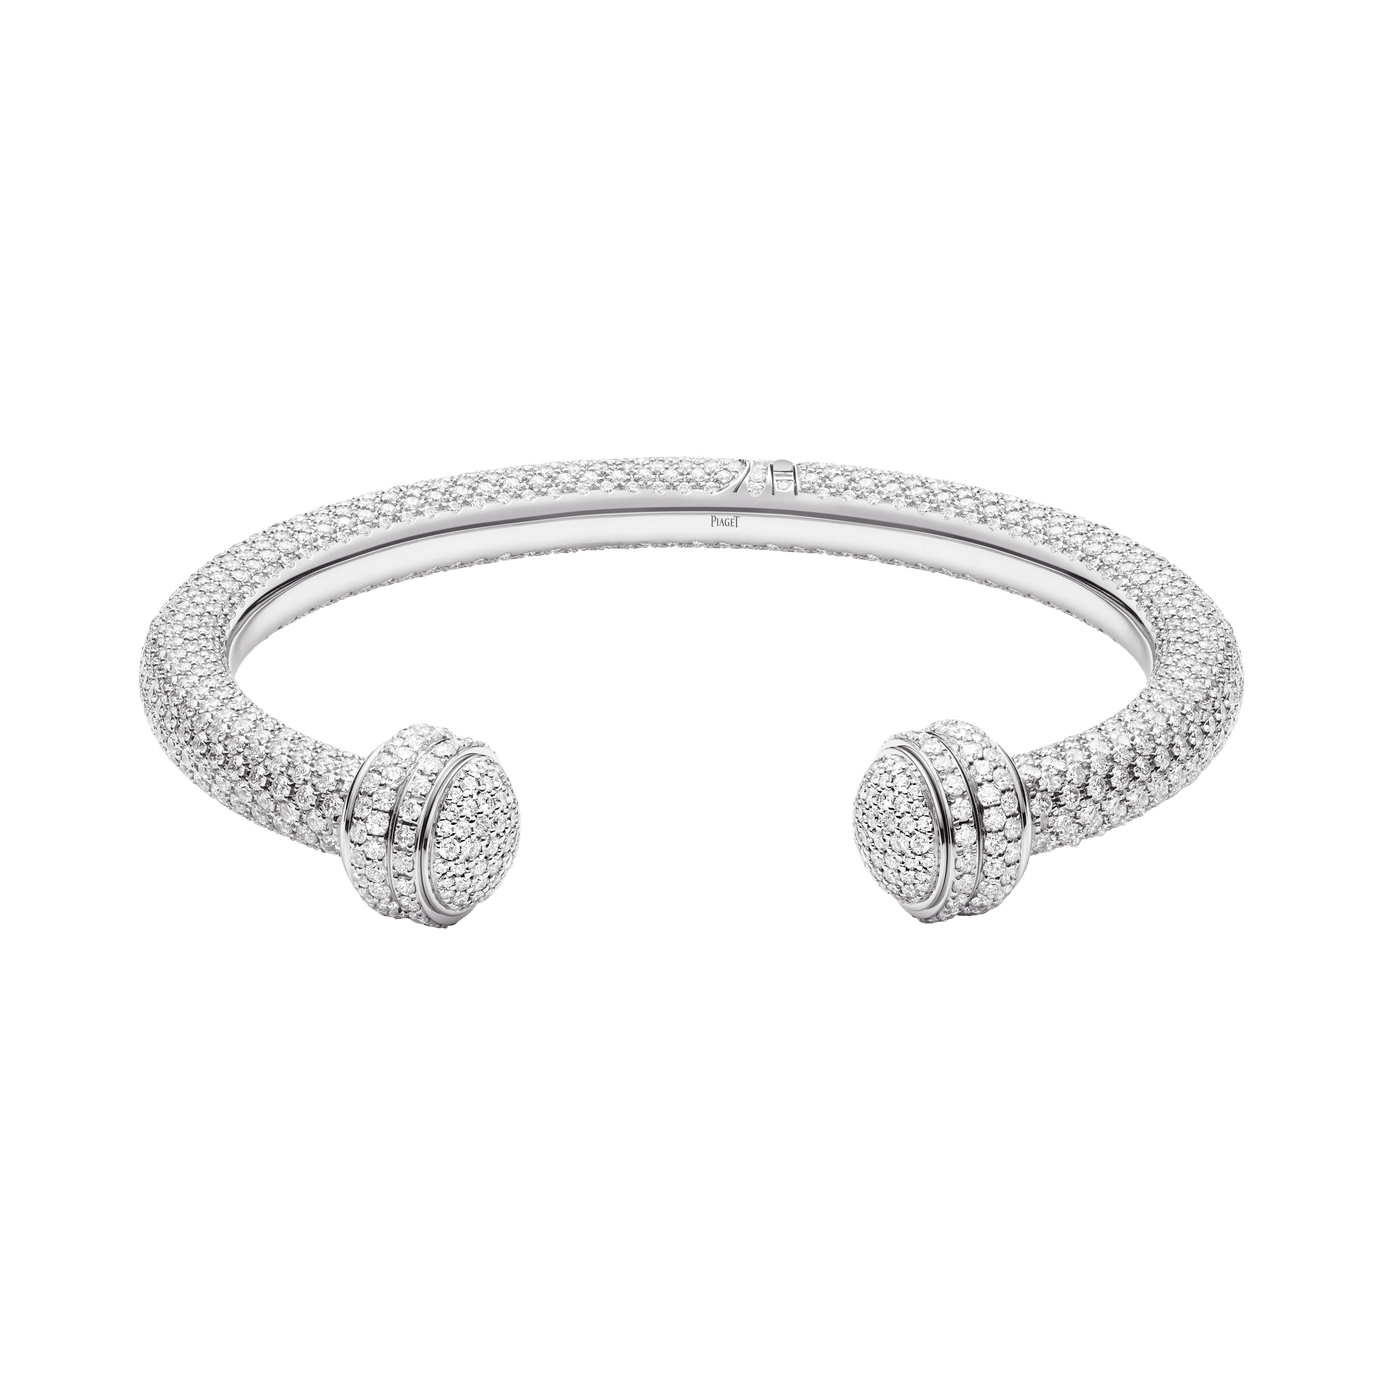 Piaget - Possession Open Bangle Bracelet, White Gold Ceramic Diamond Open Bangle Bracelet G36PG300